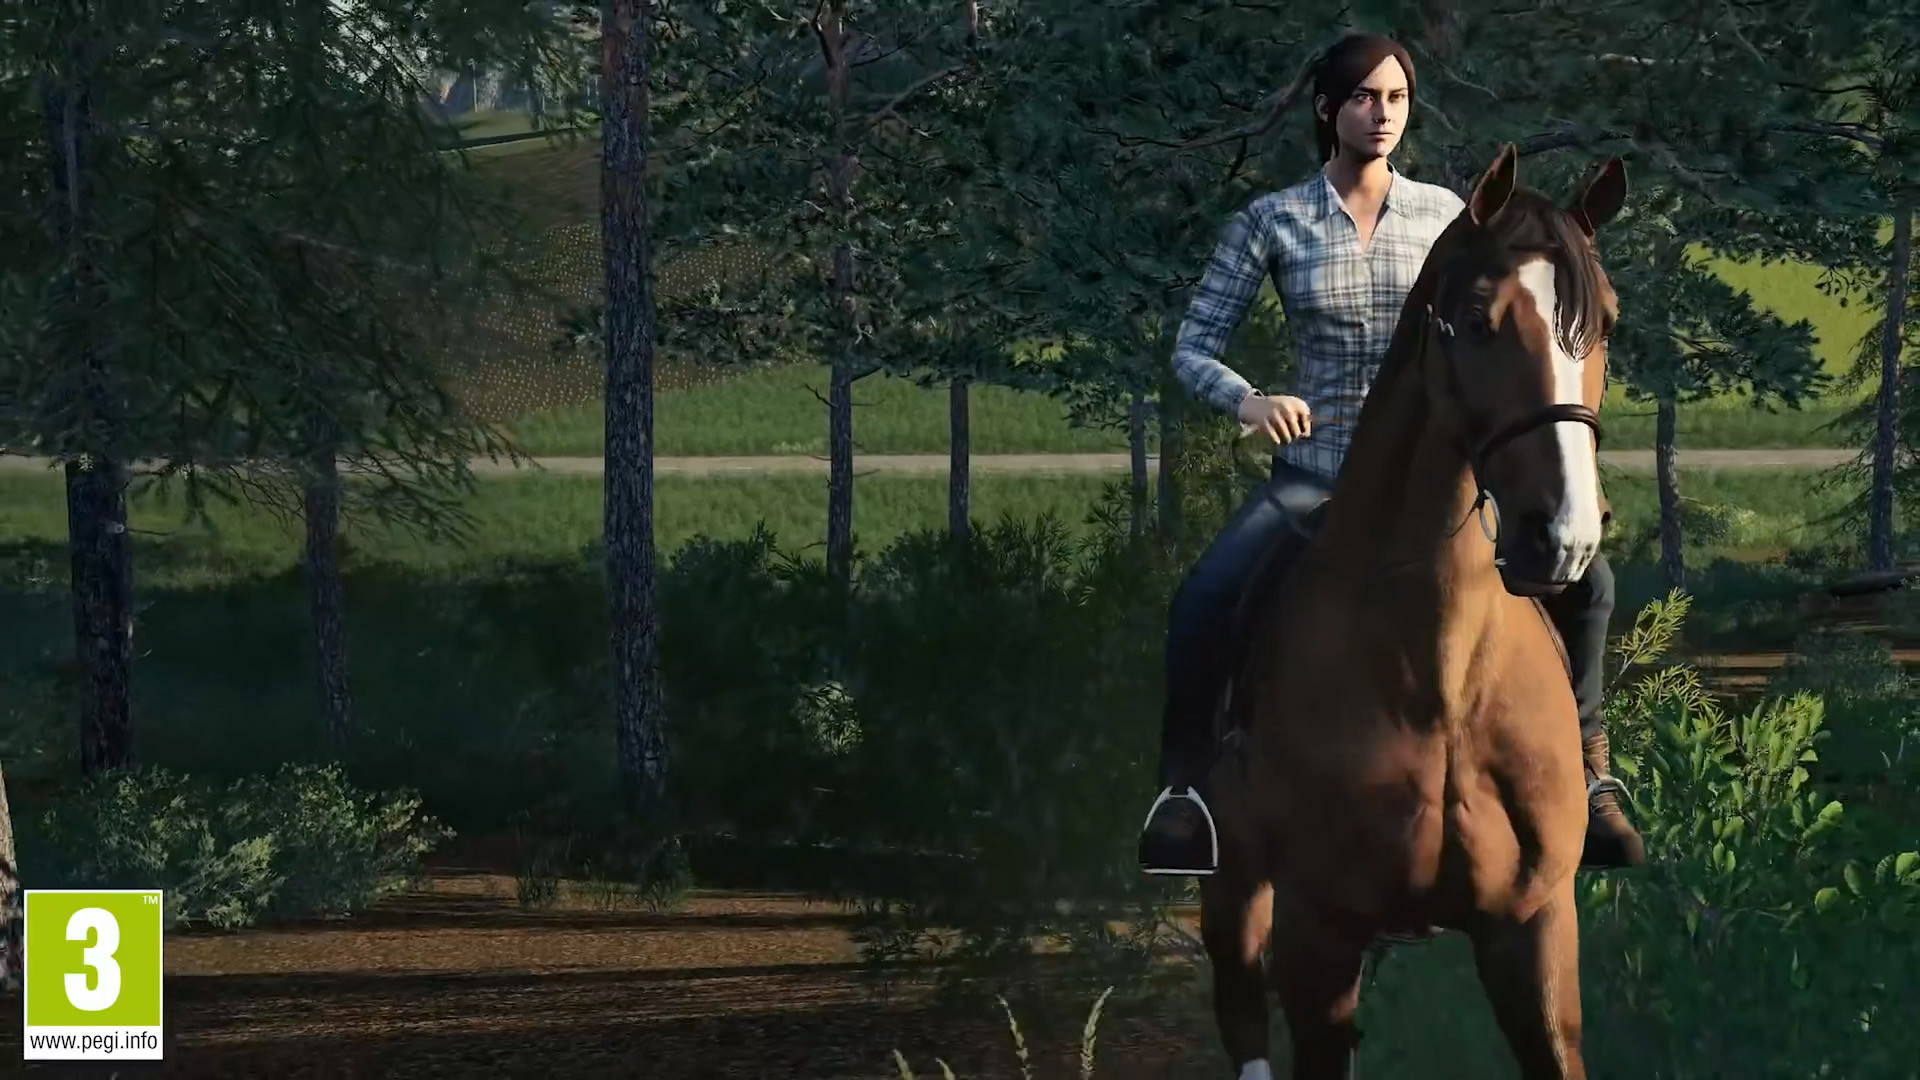 《模拟农场19》全新实机演示 玩家驯养家畜骑马畅游